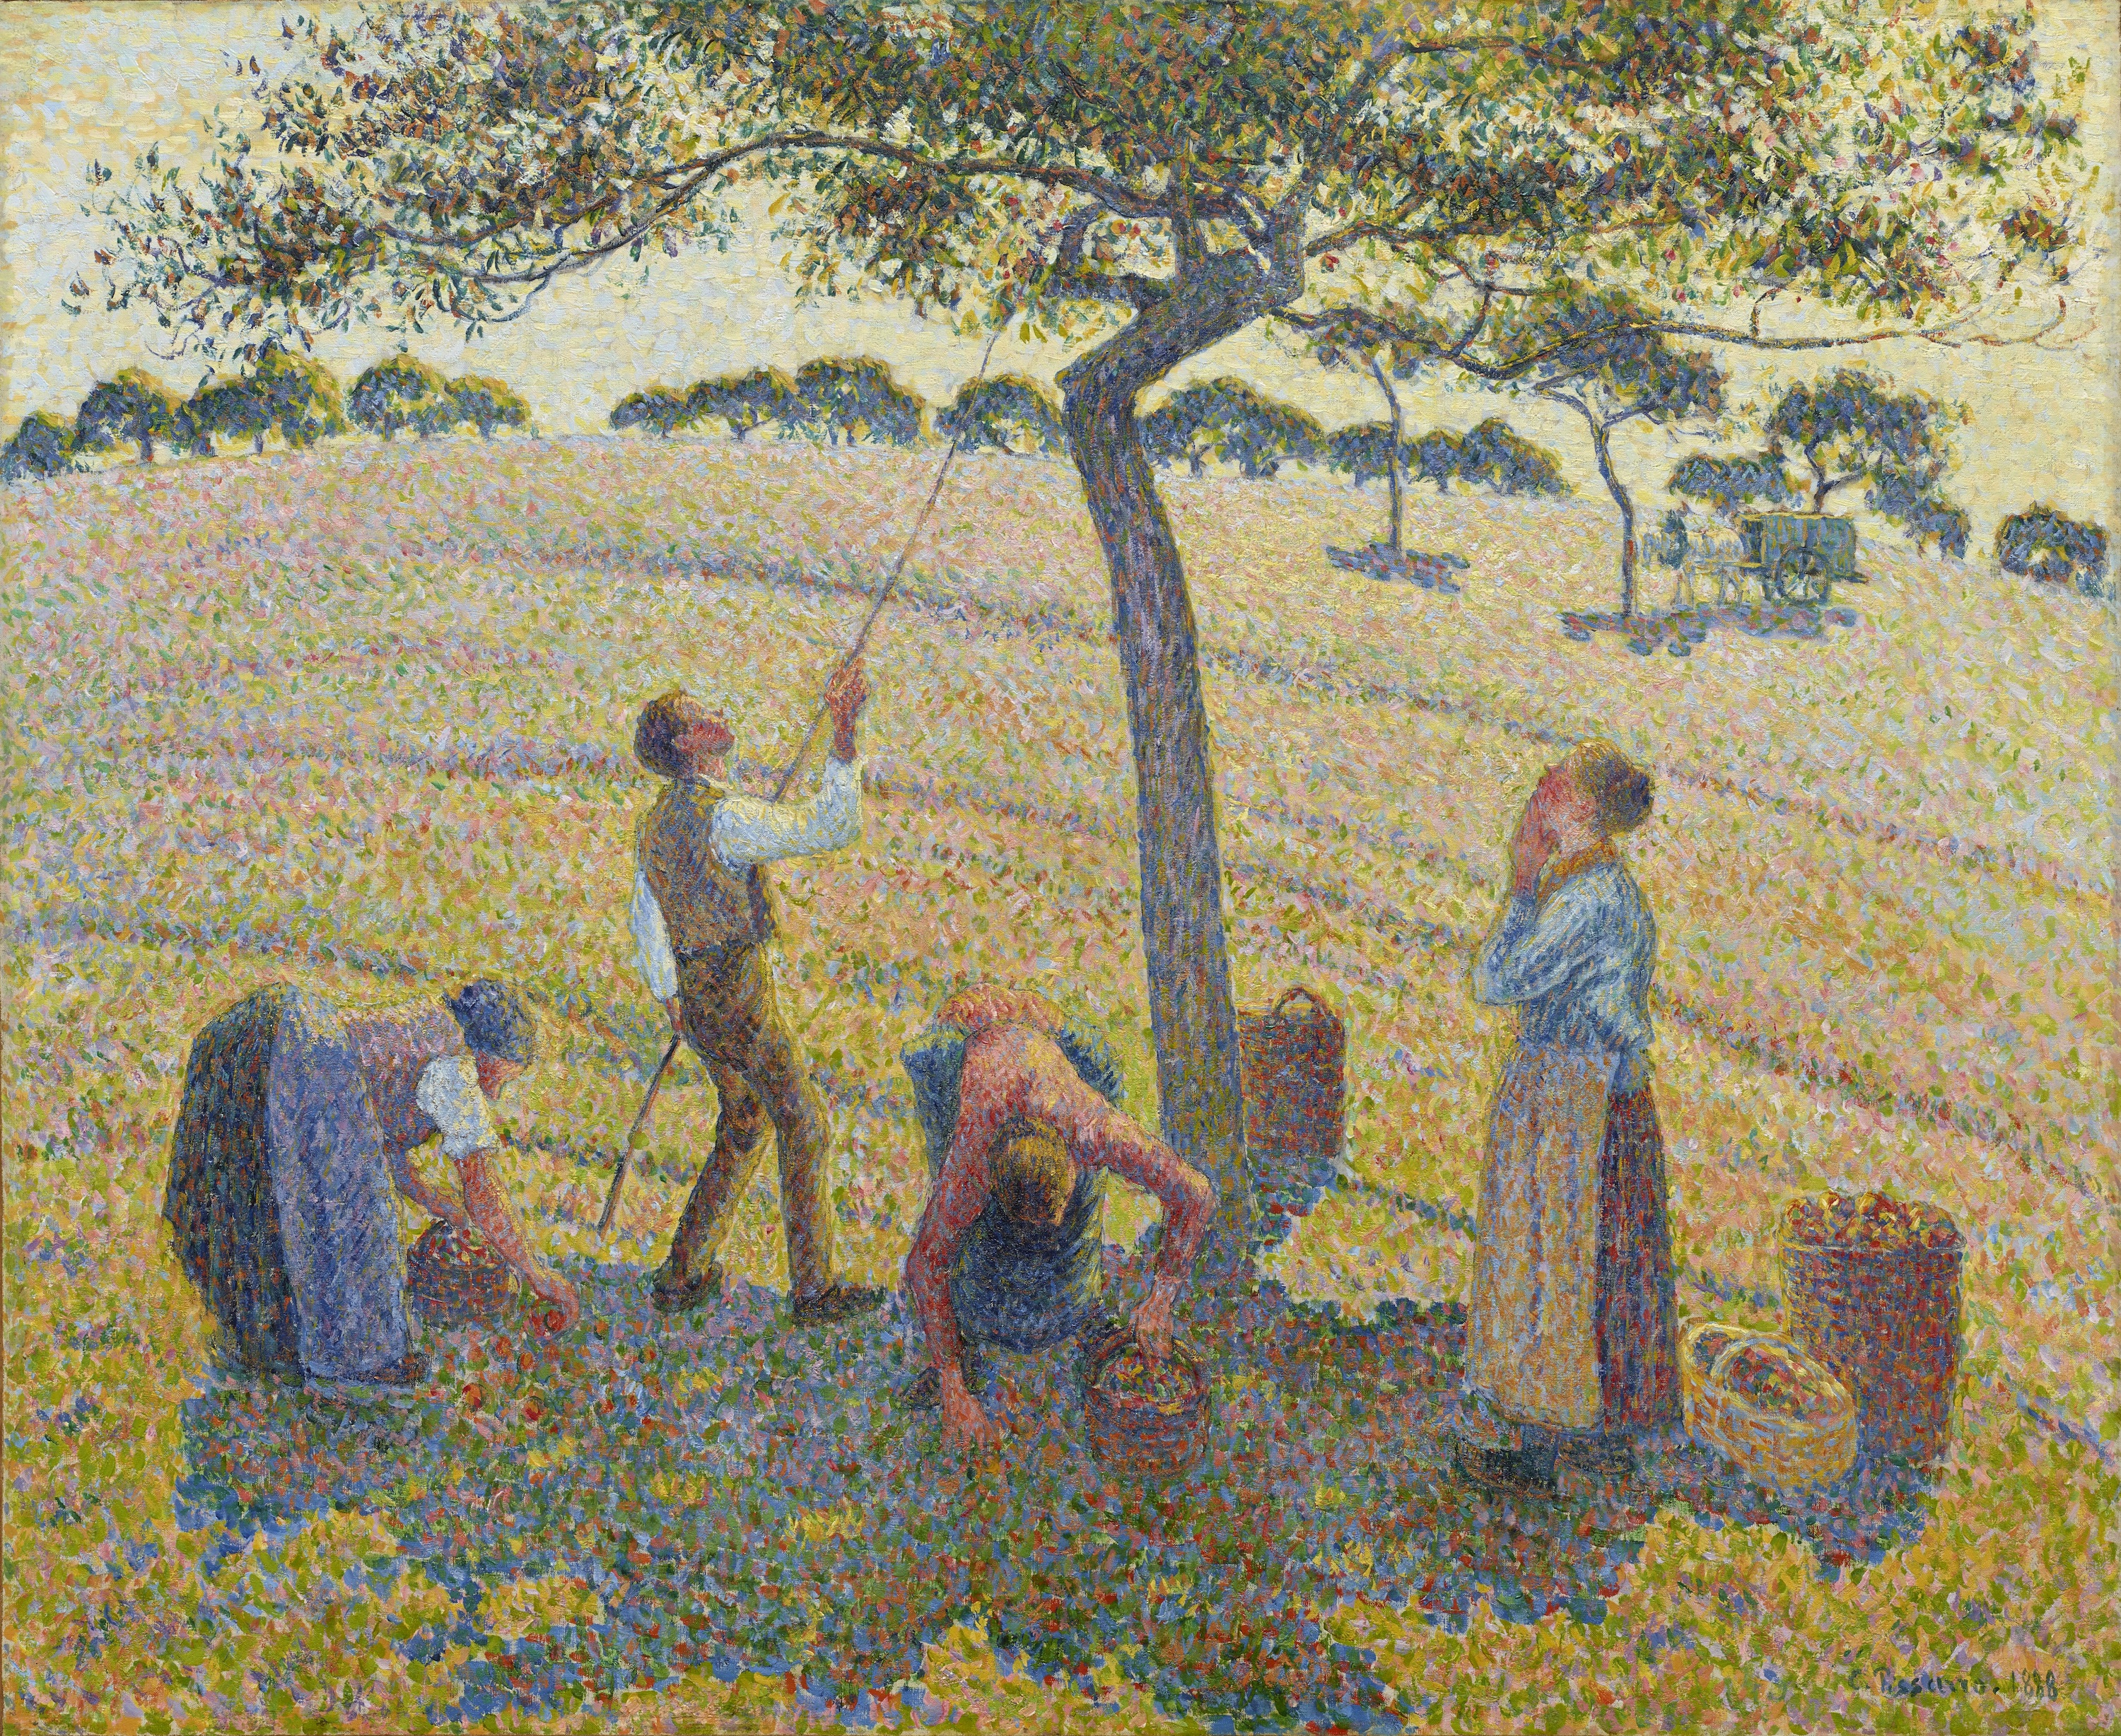 リンゴの収穫 by Camille Pissarro - 1888年 - 61 x 74 cm 